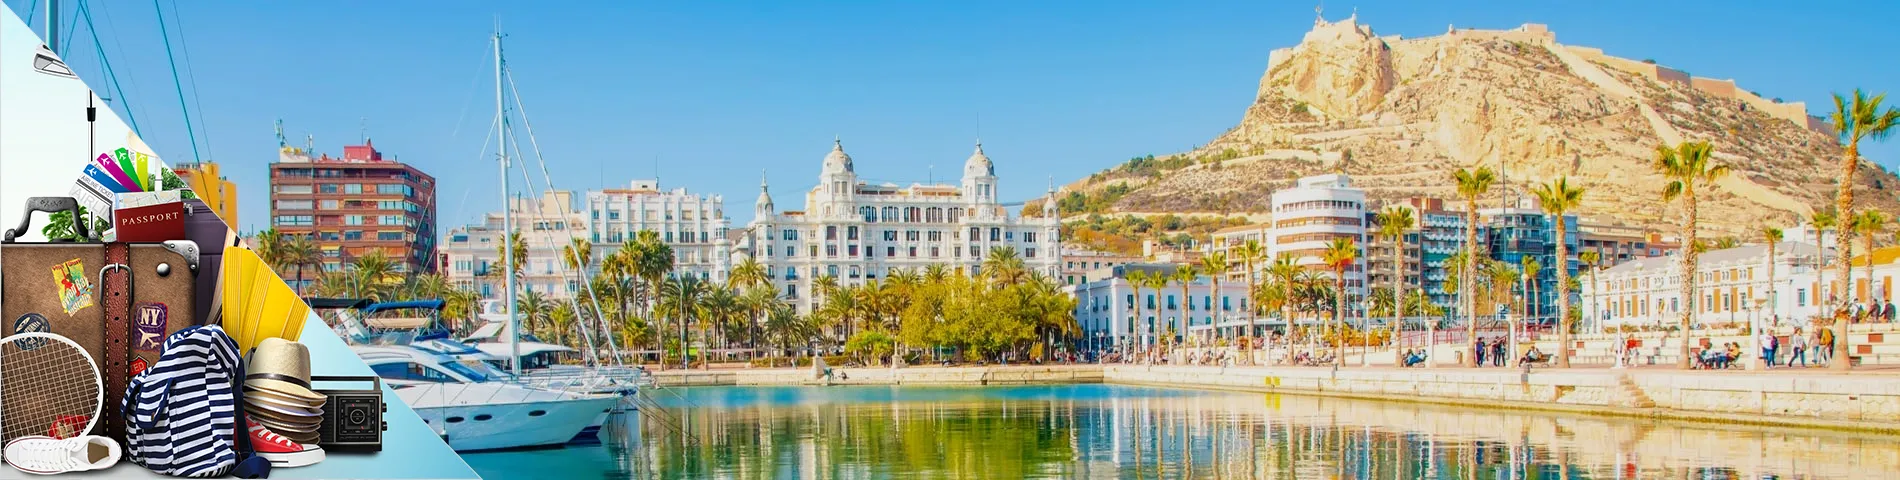 Alicante - Engelska för turism